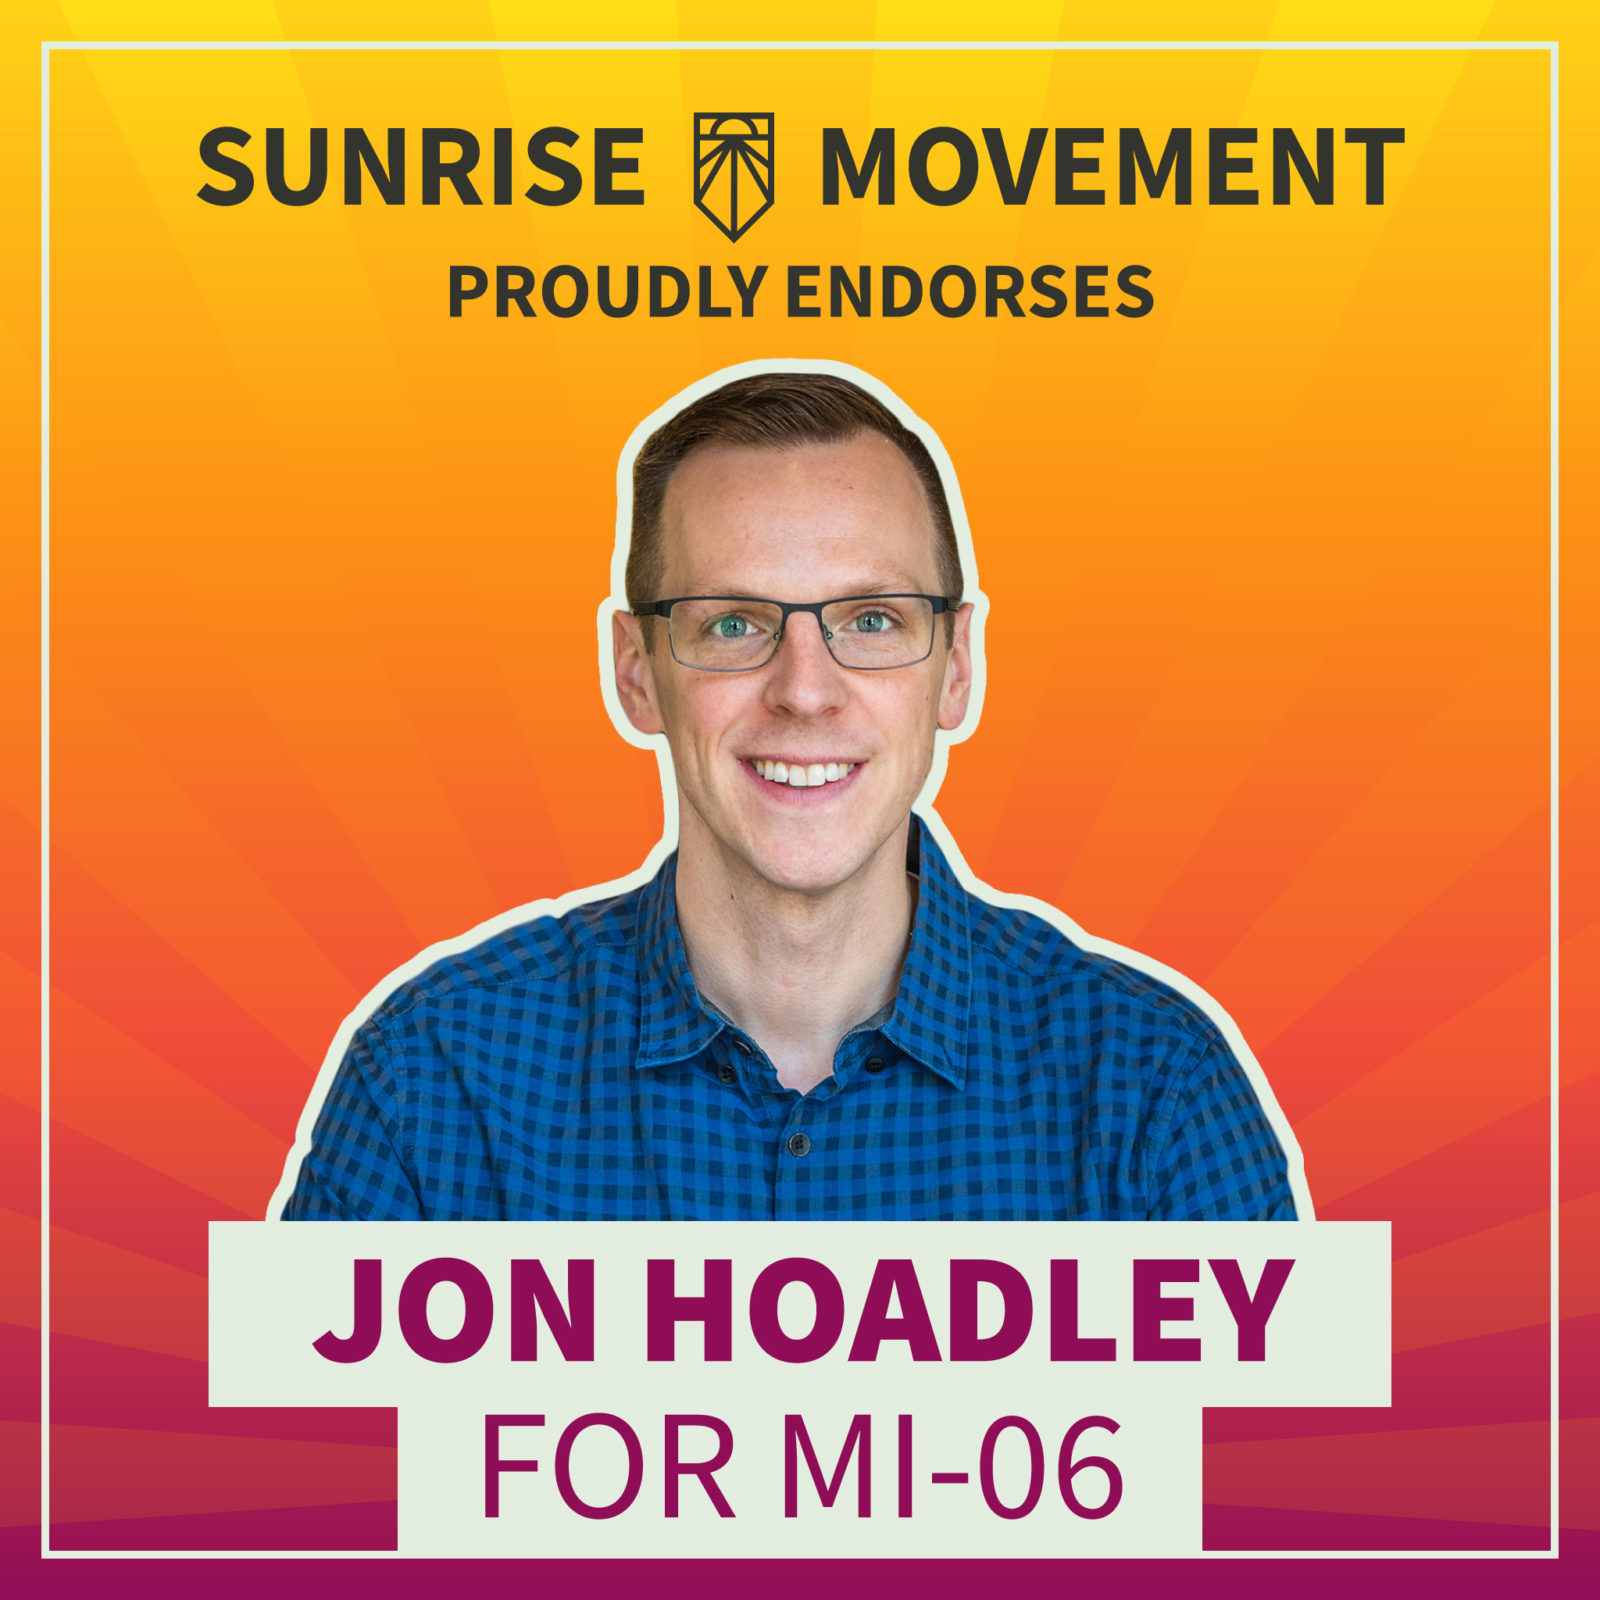 Фотография Джона Ходли с текстом: «Движение восхода солнца» с гордостью поддерживает Джона Ходли для участия в МИ-06.